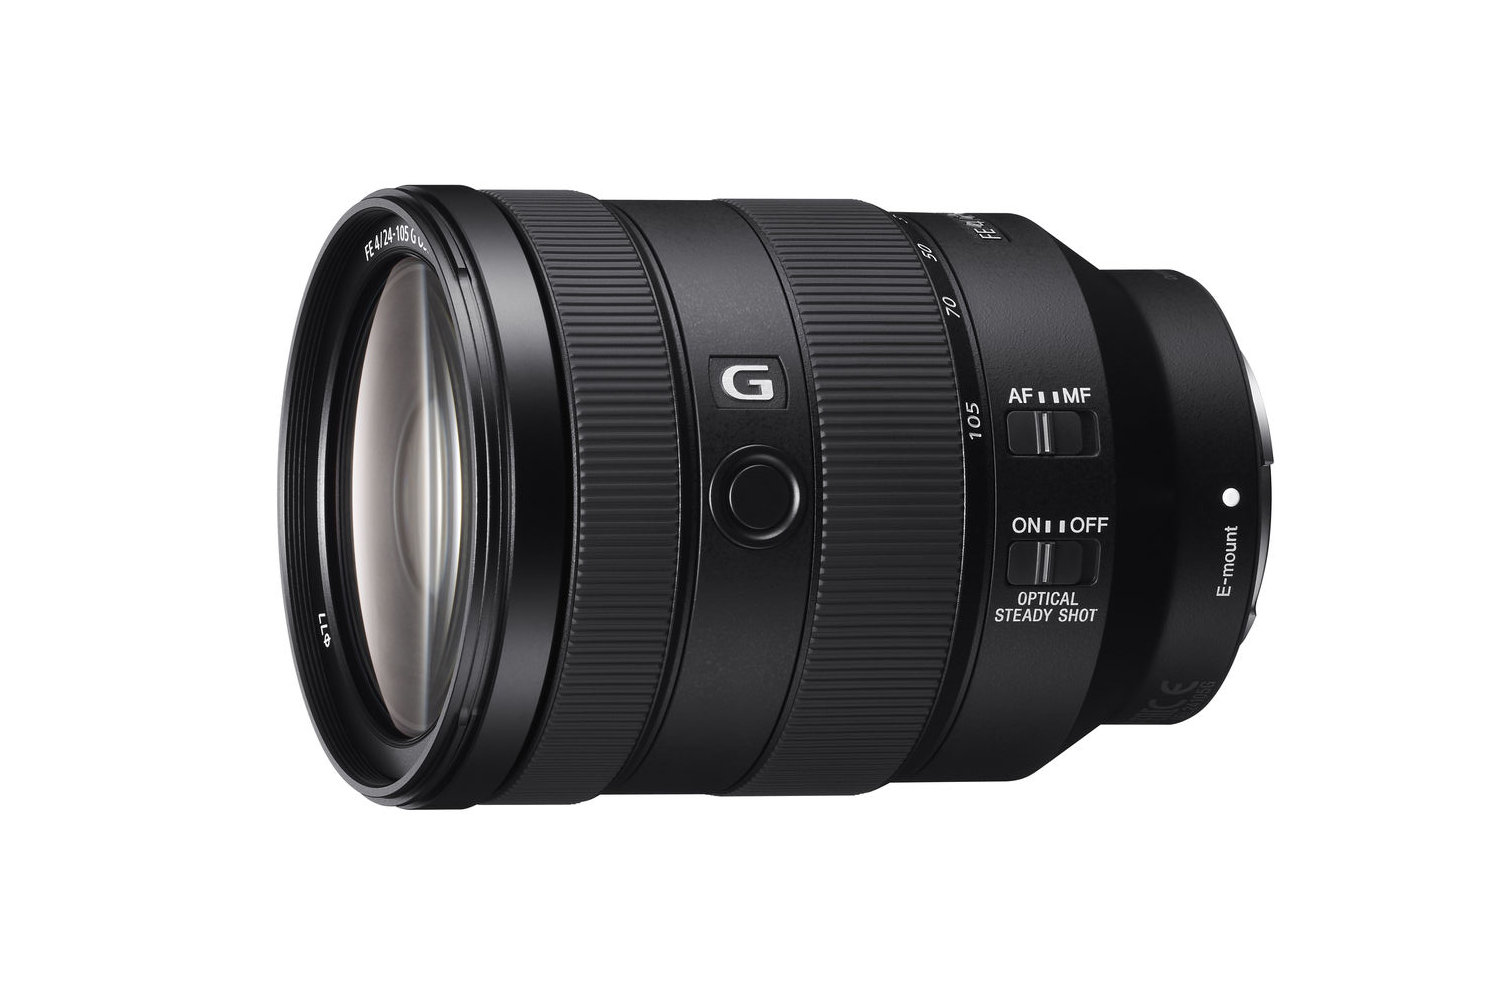 Best Sony lens: Sony FE 24-105mm f/4 G OSS 